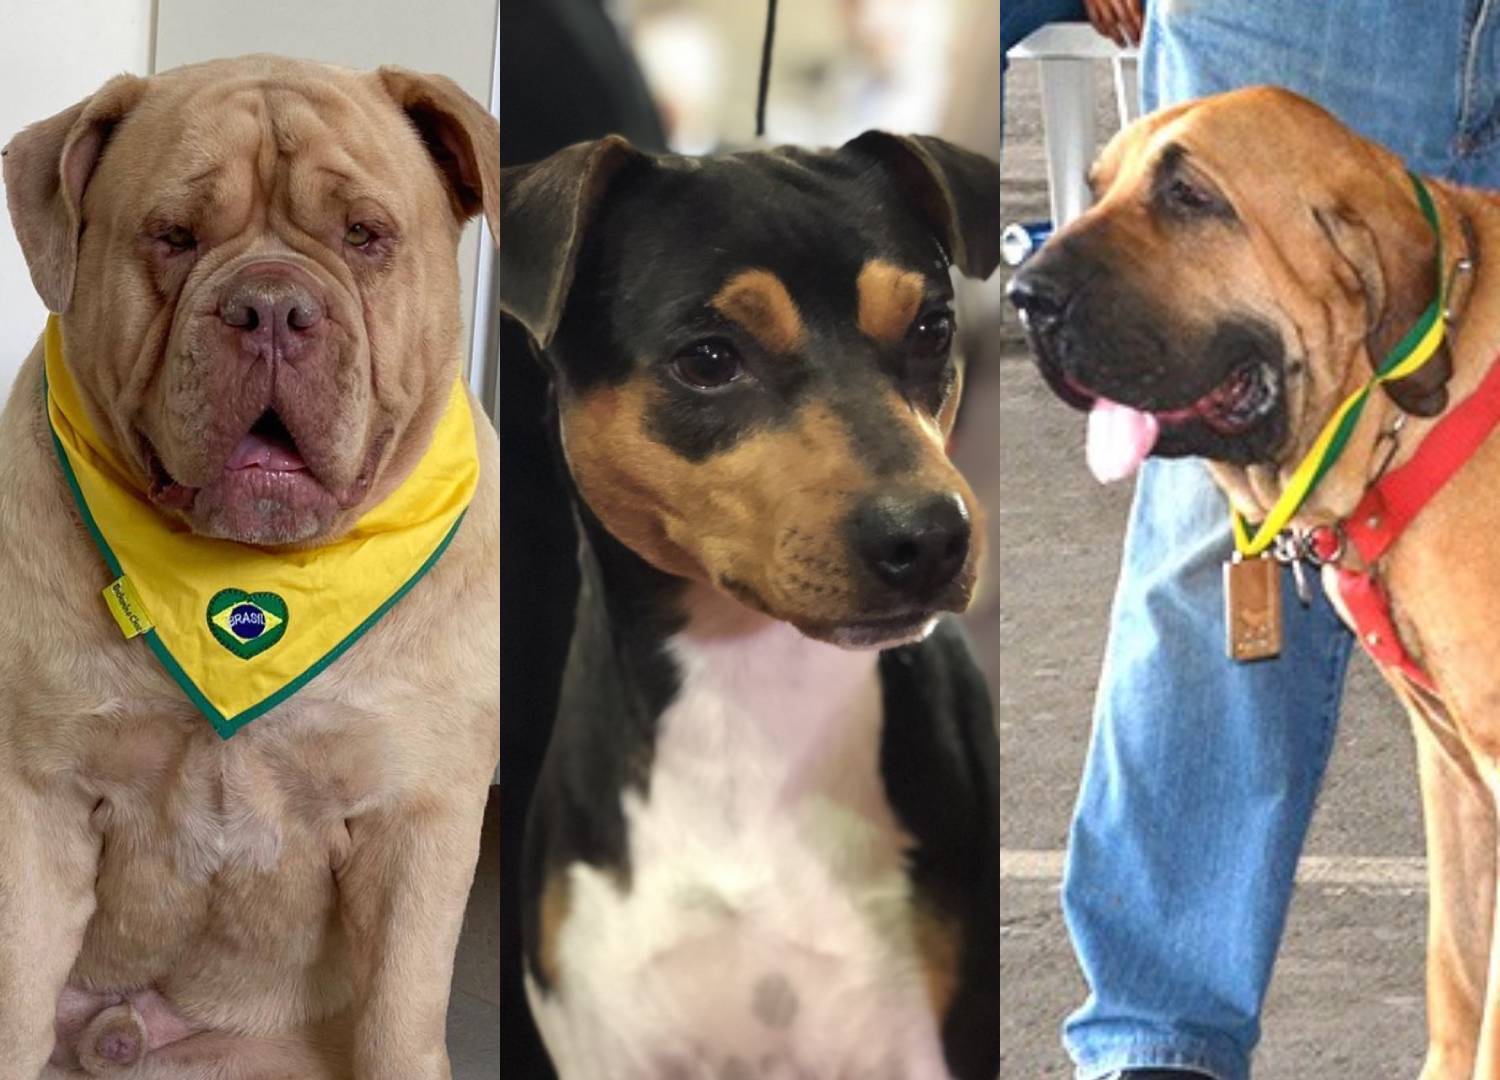 Conheça 7 raças de cachorros que foram criadas no Brasil - Fotos - R7 RPet